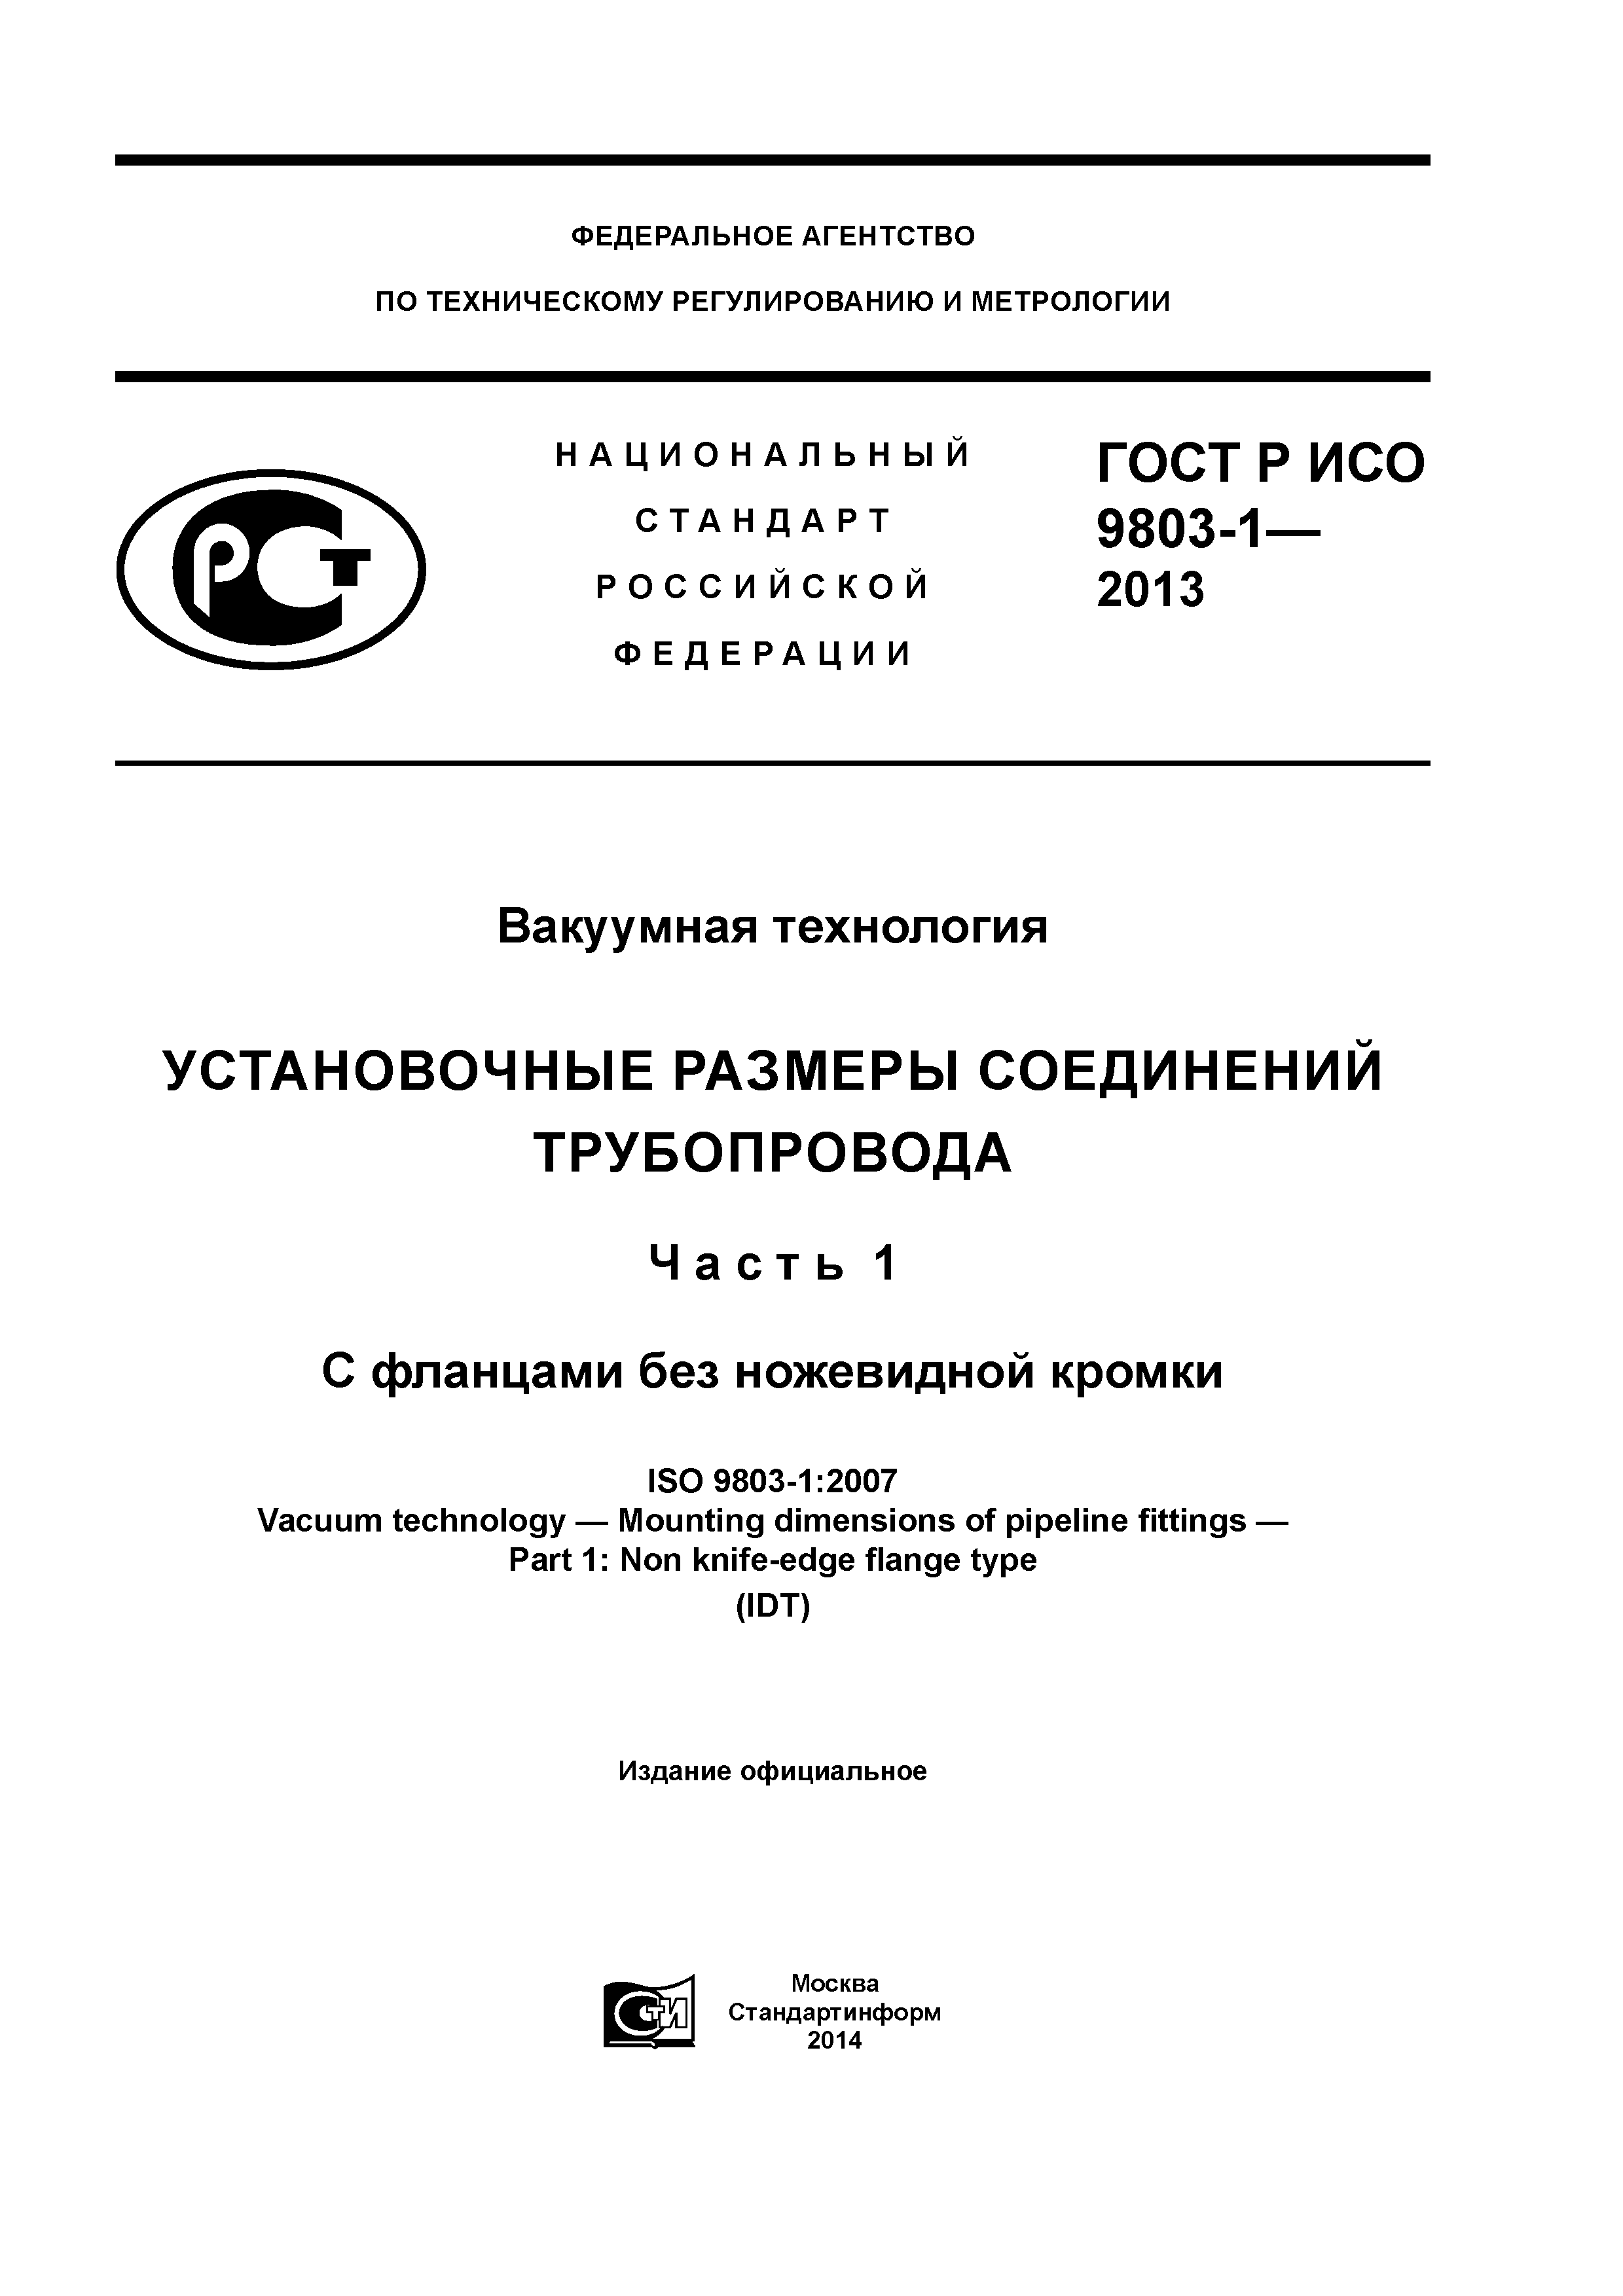 ГОСТ Р ИСО 9803-1-2013